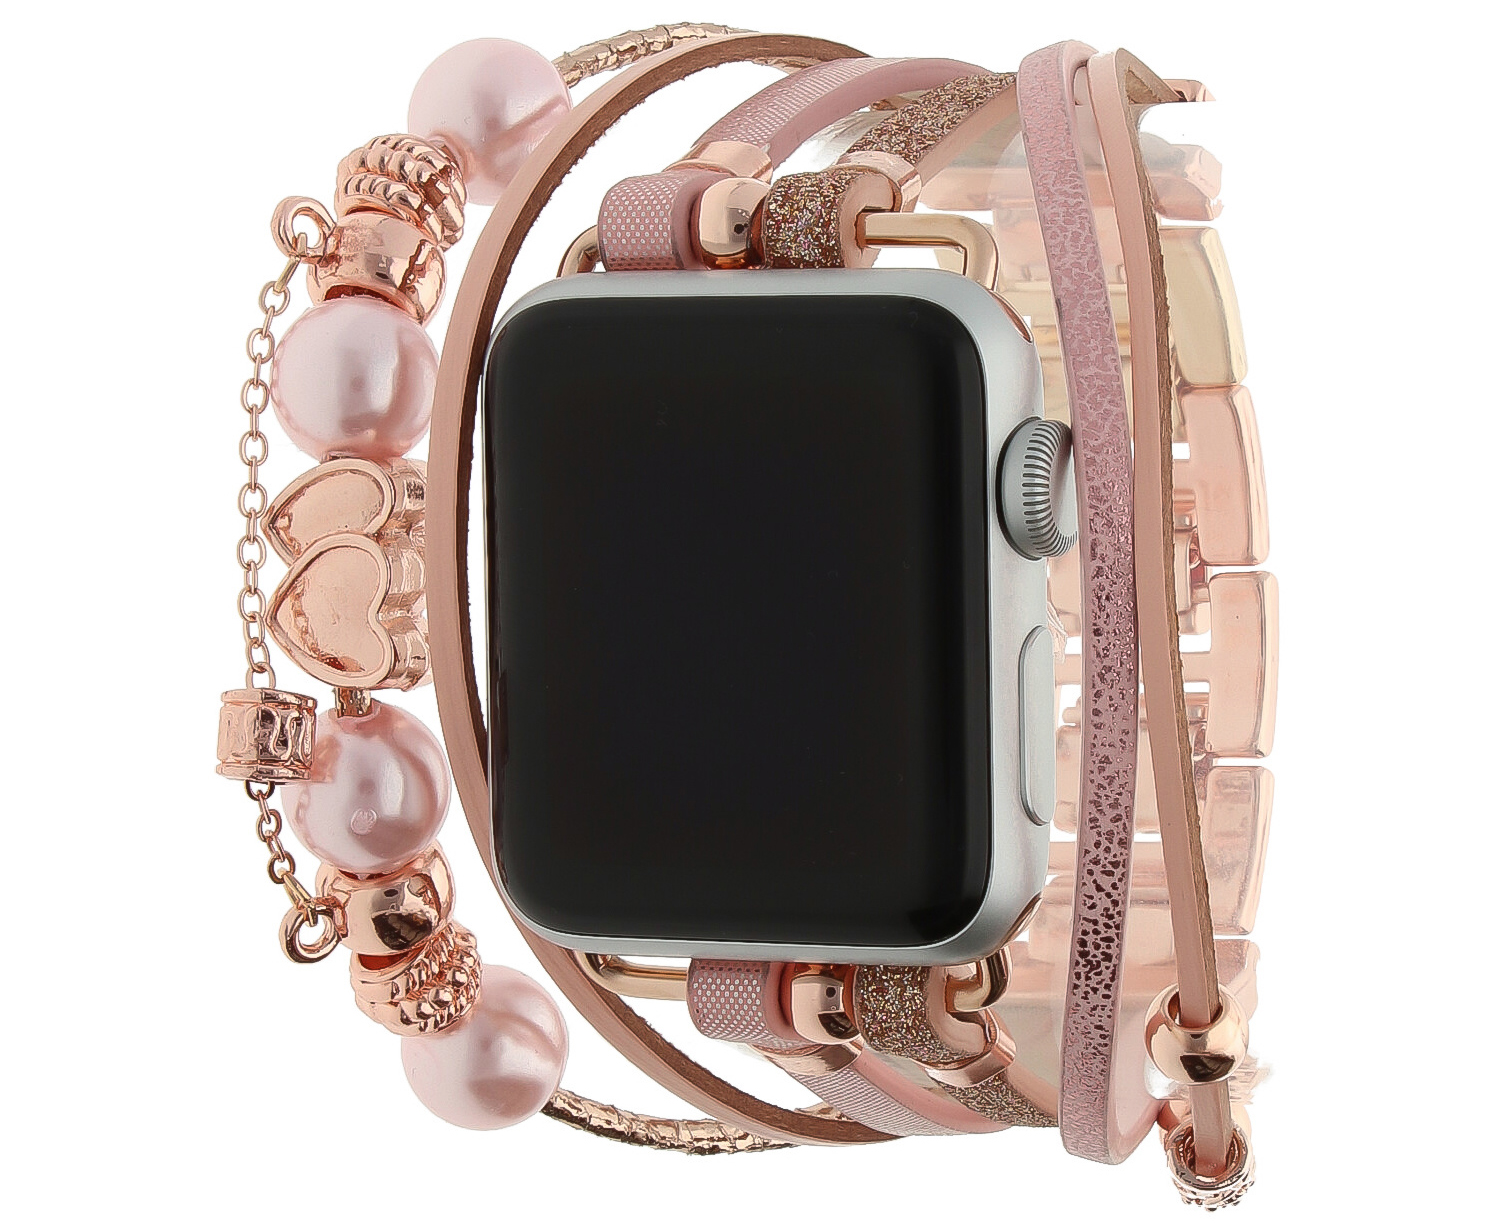 Correa de joyería para Apple Watch – Liz oro rosa